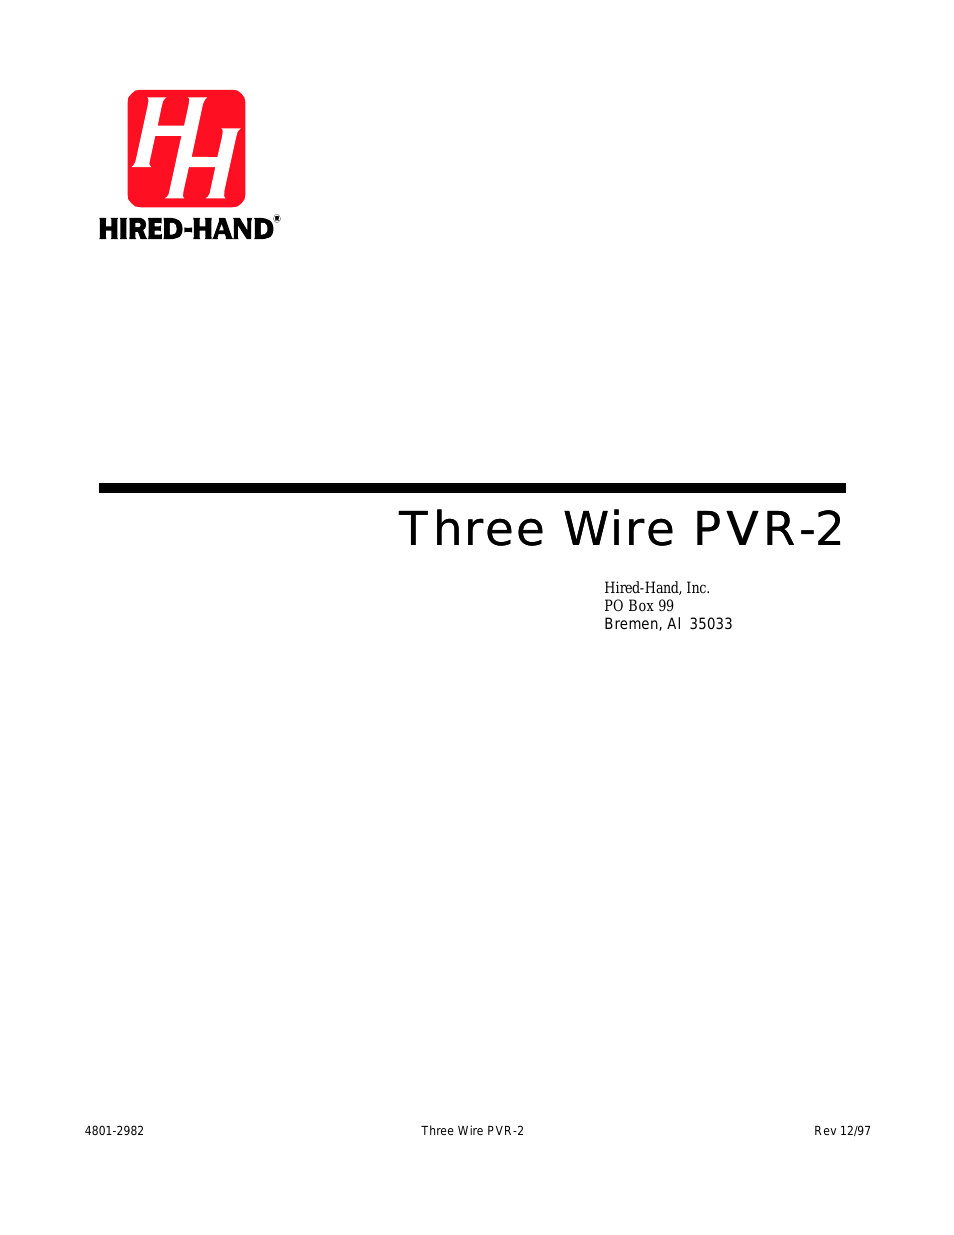 PowerTrak: Three Wire PVR-2